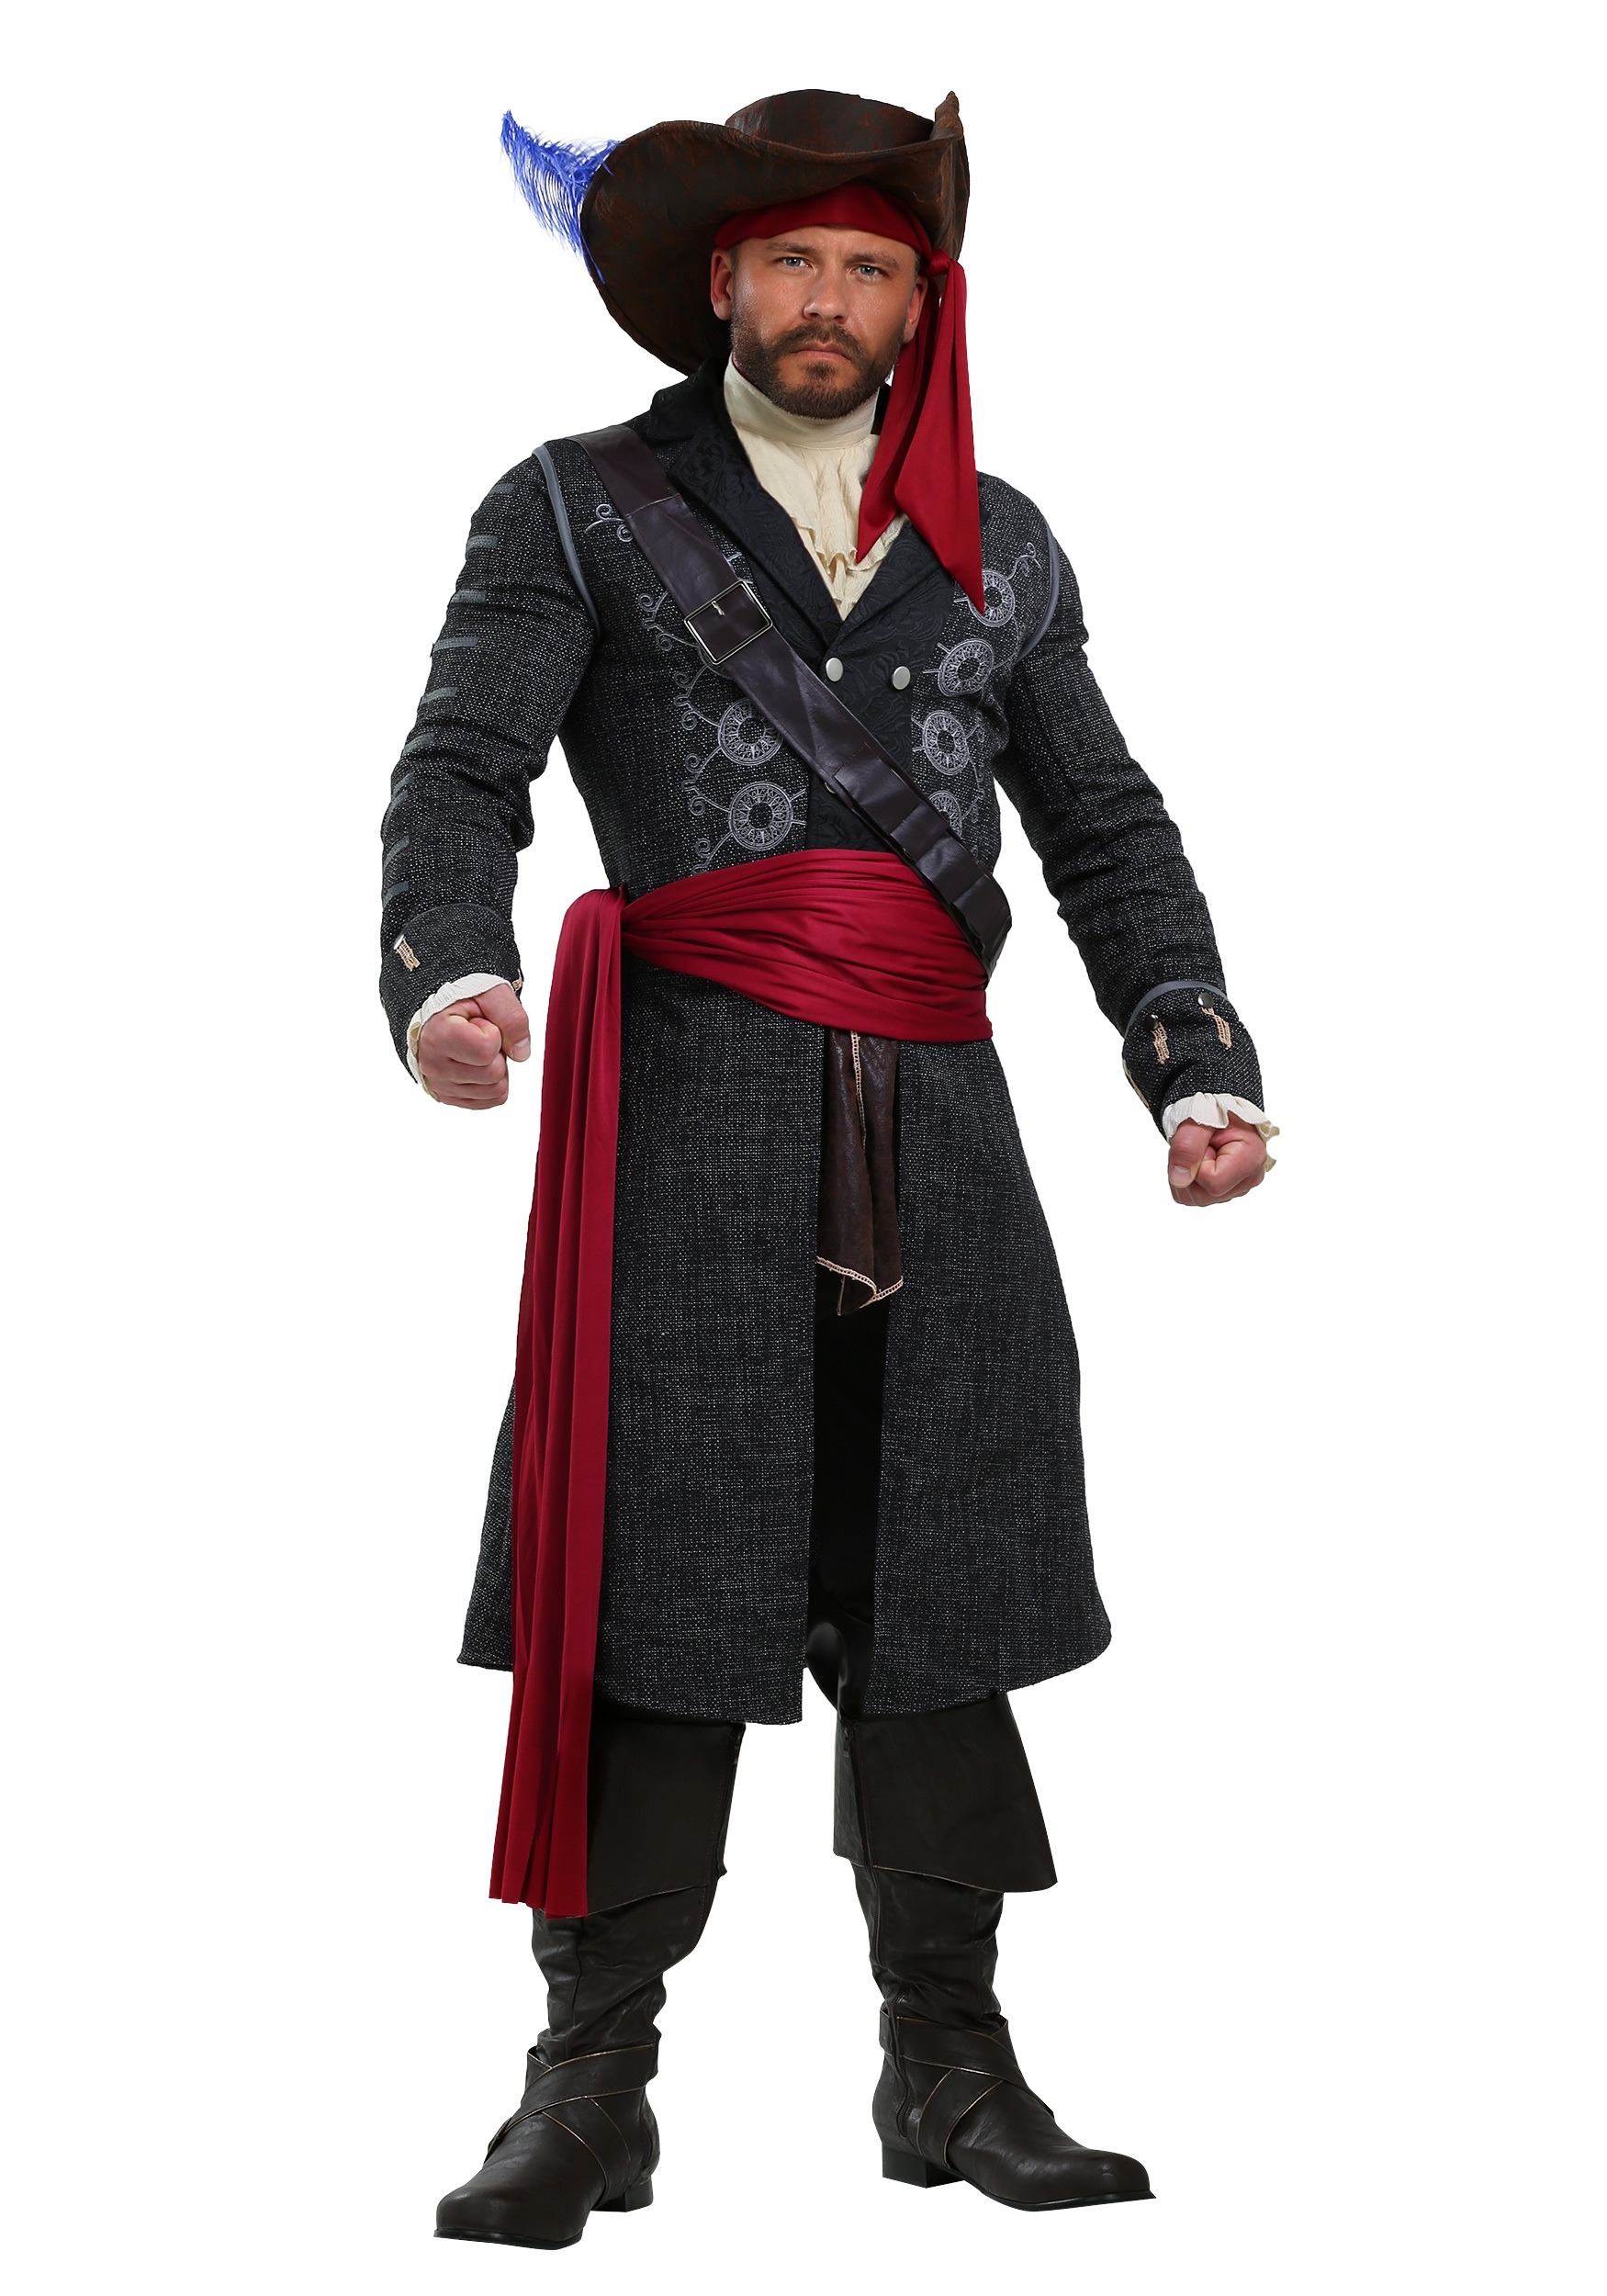 Blackbeard Fancy Dress Costume For Plus Size Men , Men's Pirate Fancy Dress Costume